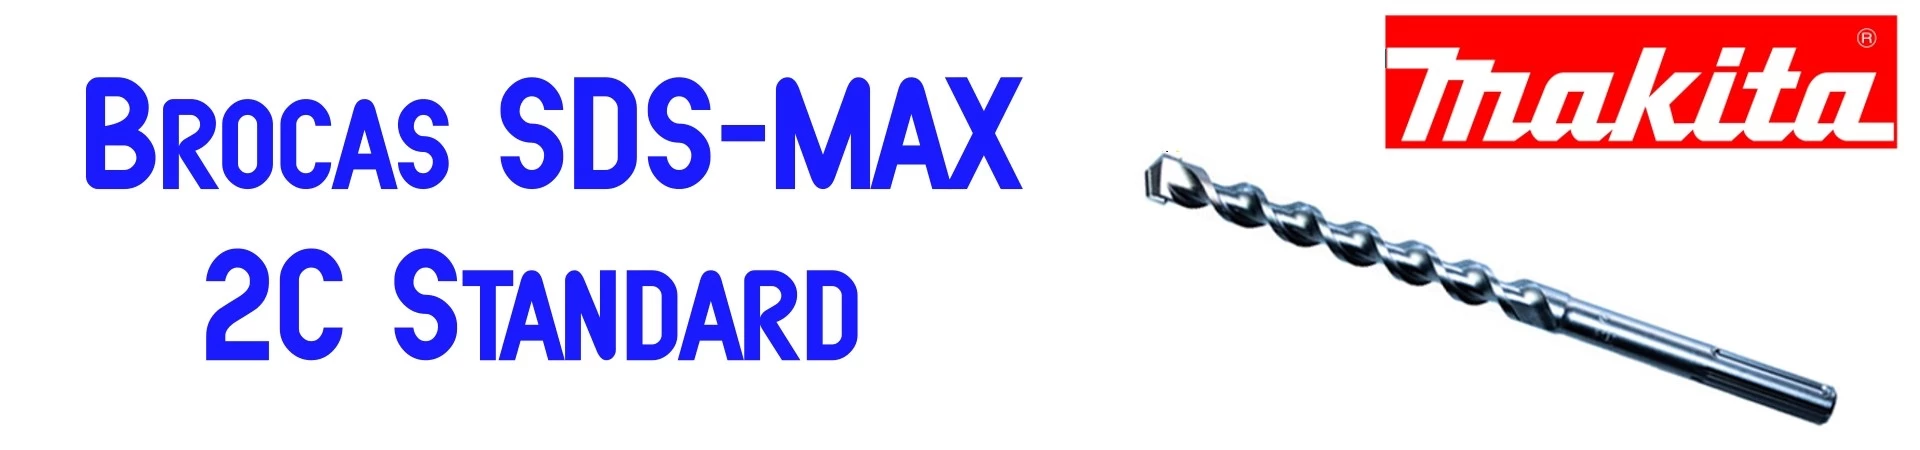 ONLINE Accesorios Makita al Mejor Precio. Broca SDS-MAX 2C Standard